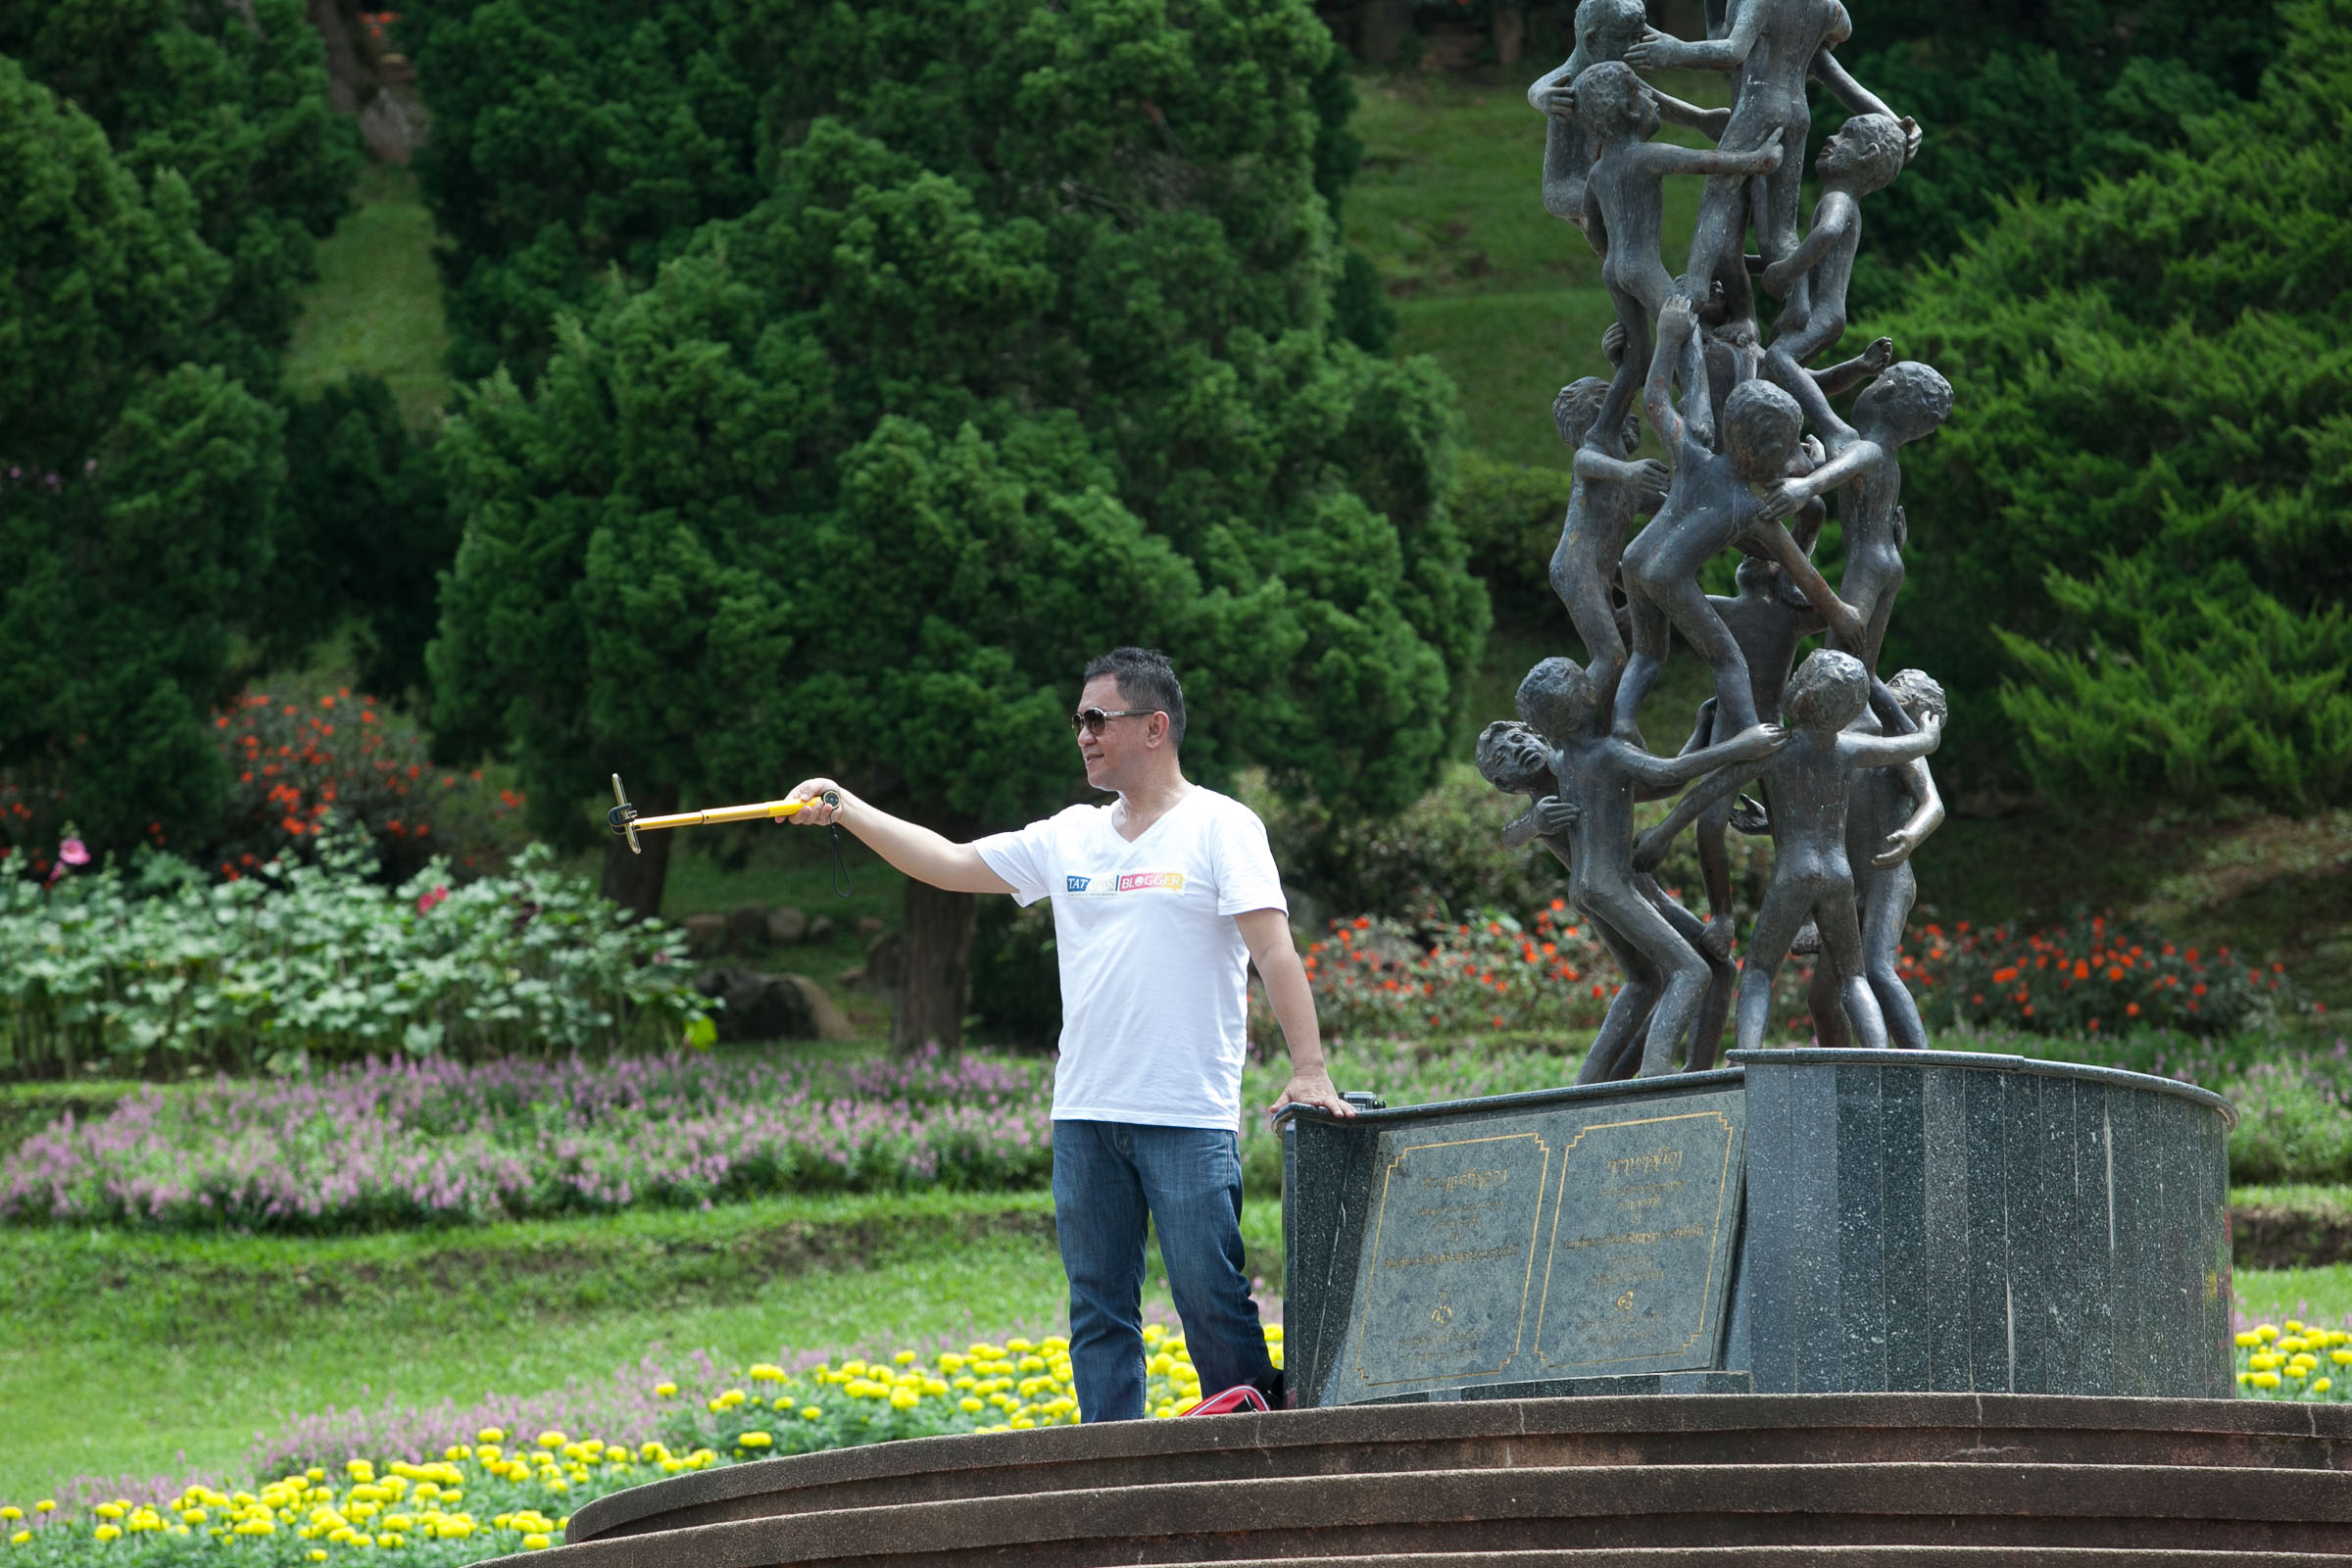 Doi Tung Royal Villa and Mae Fah Luang Garden